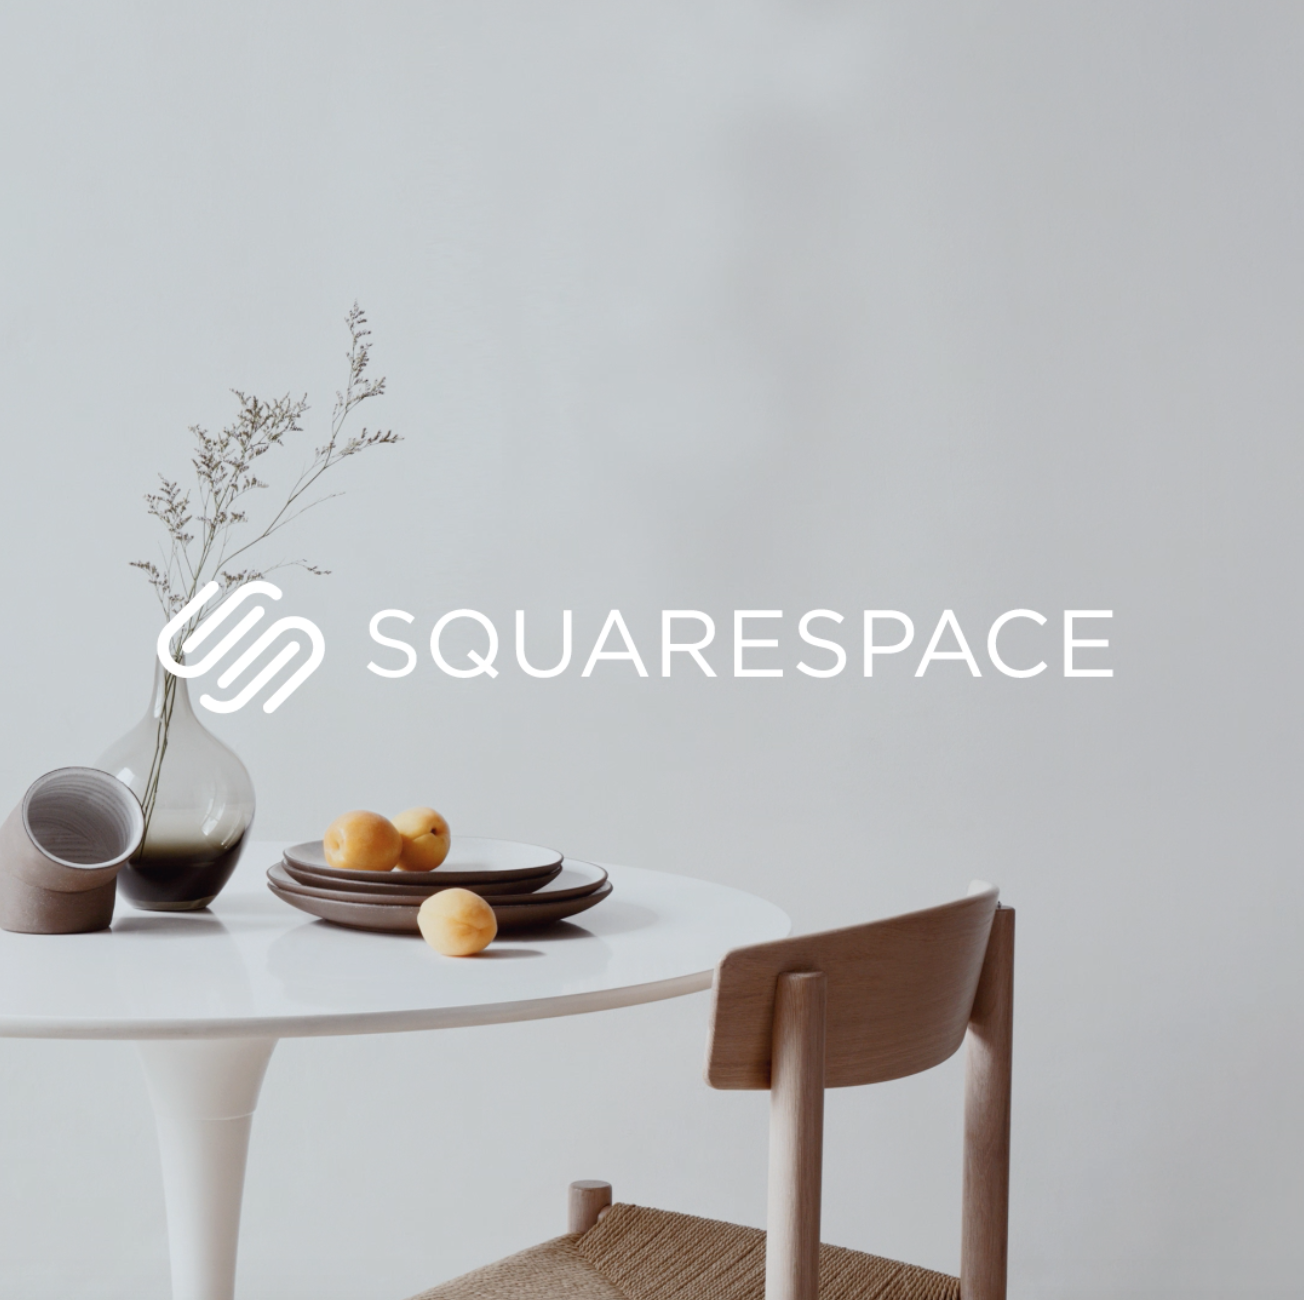 Squarespace Domains